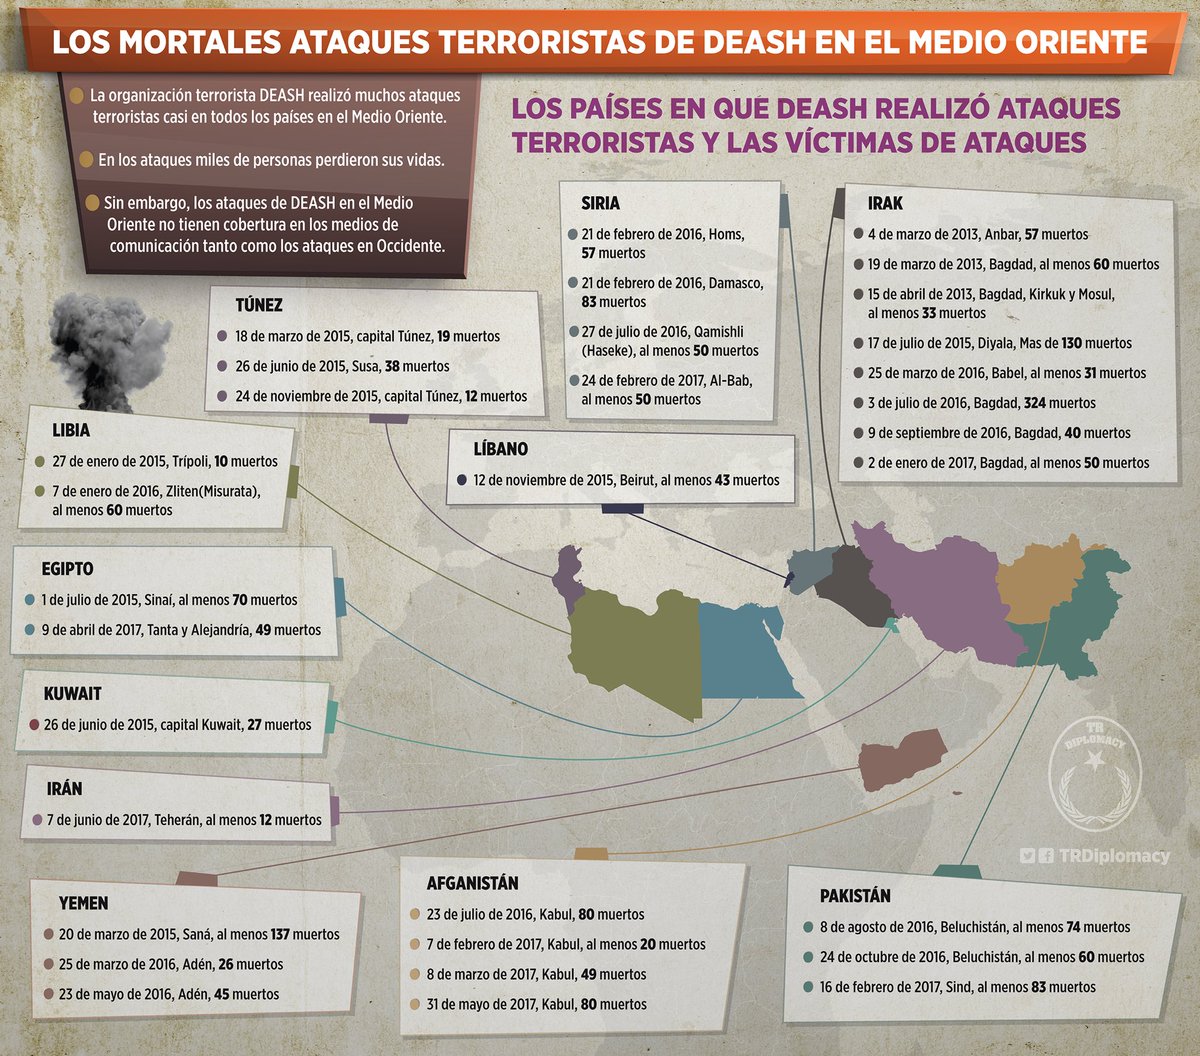 Los mortales ataques terroristas de DEASH en el Medio Oriente